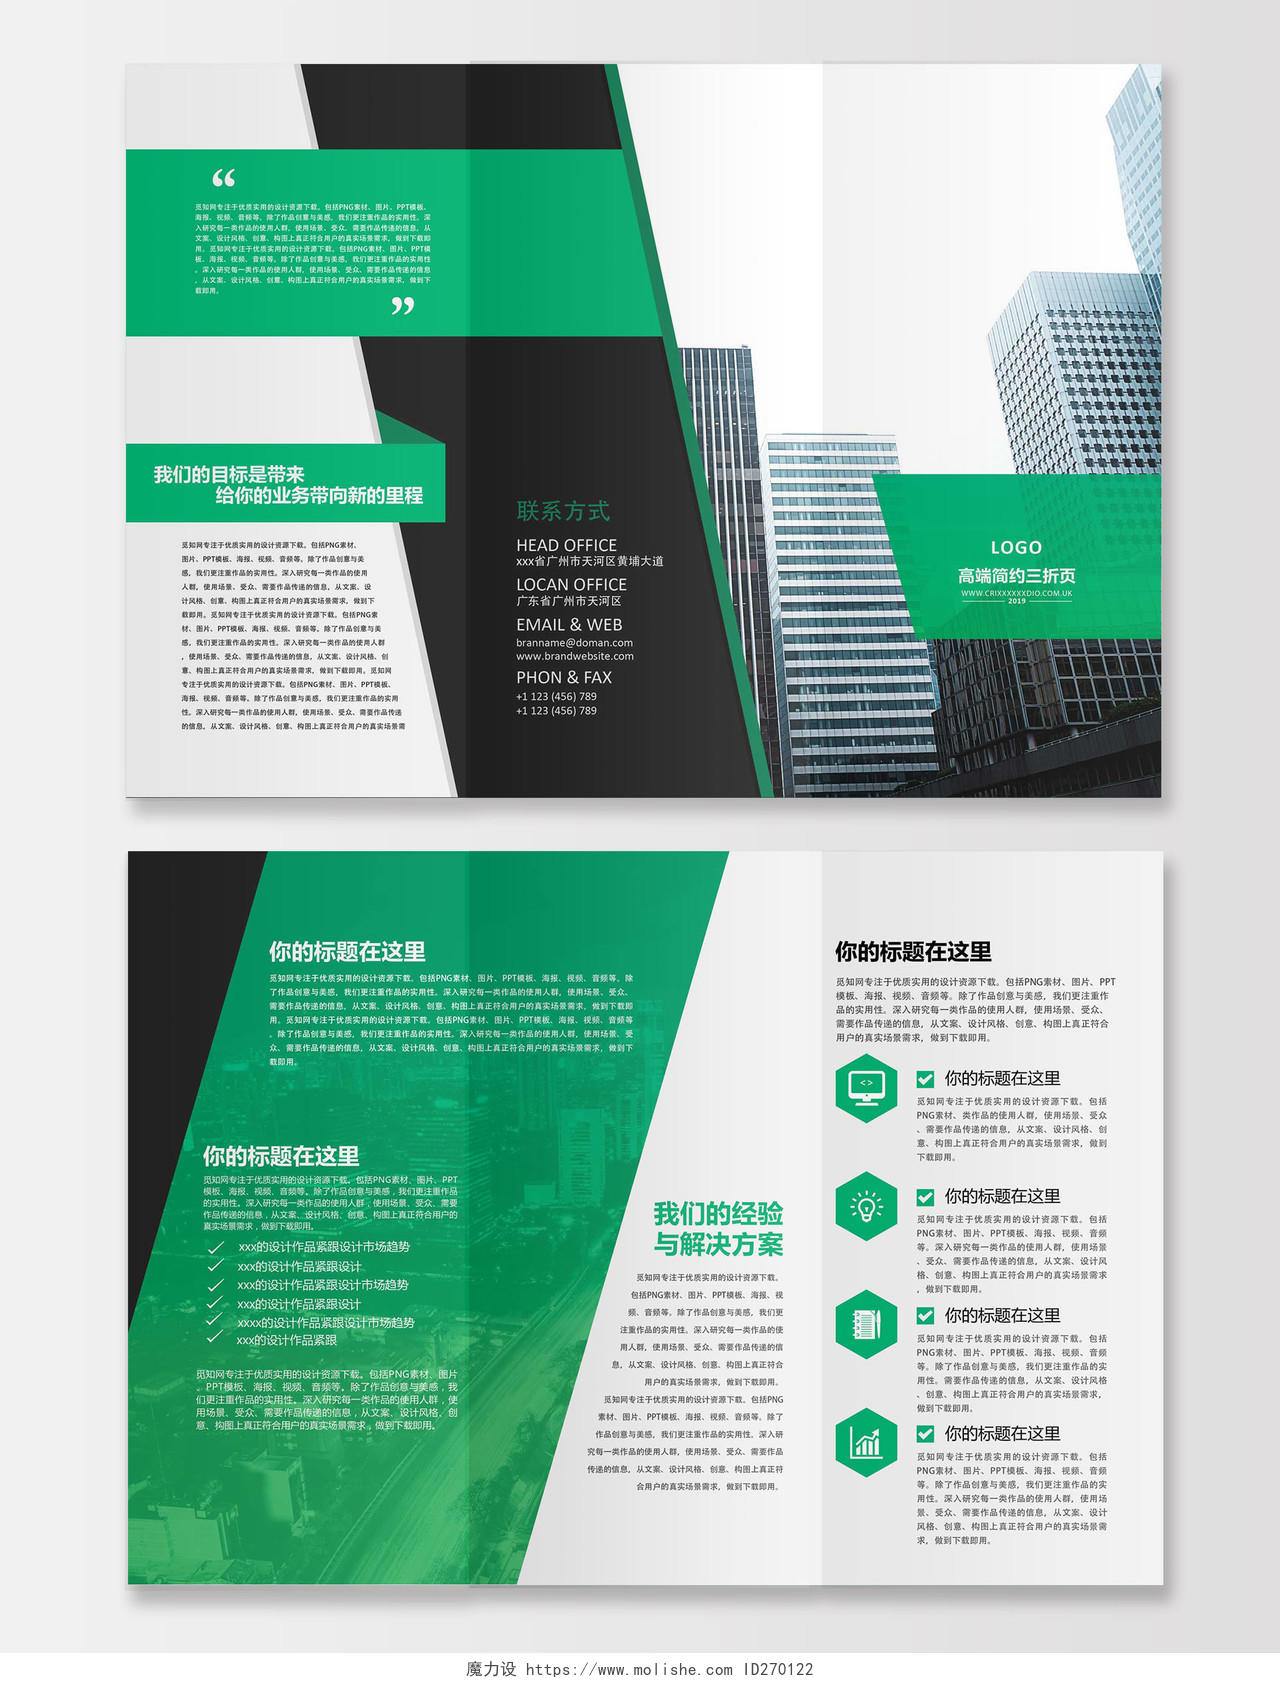 公司介绍高端简约公司文化企业宣传三折页设计